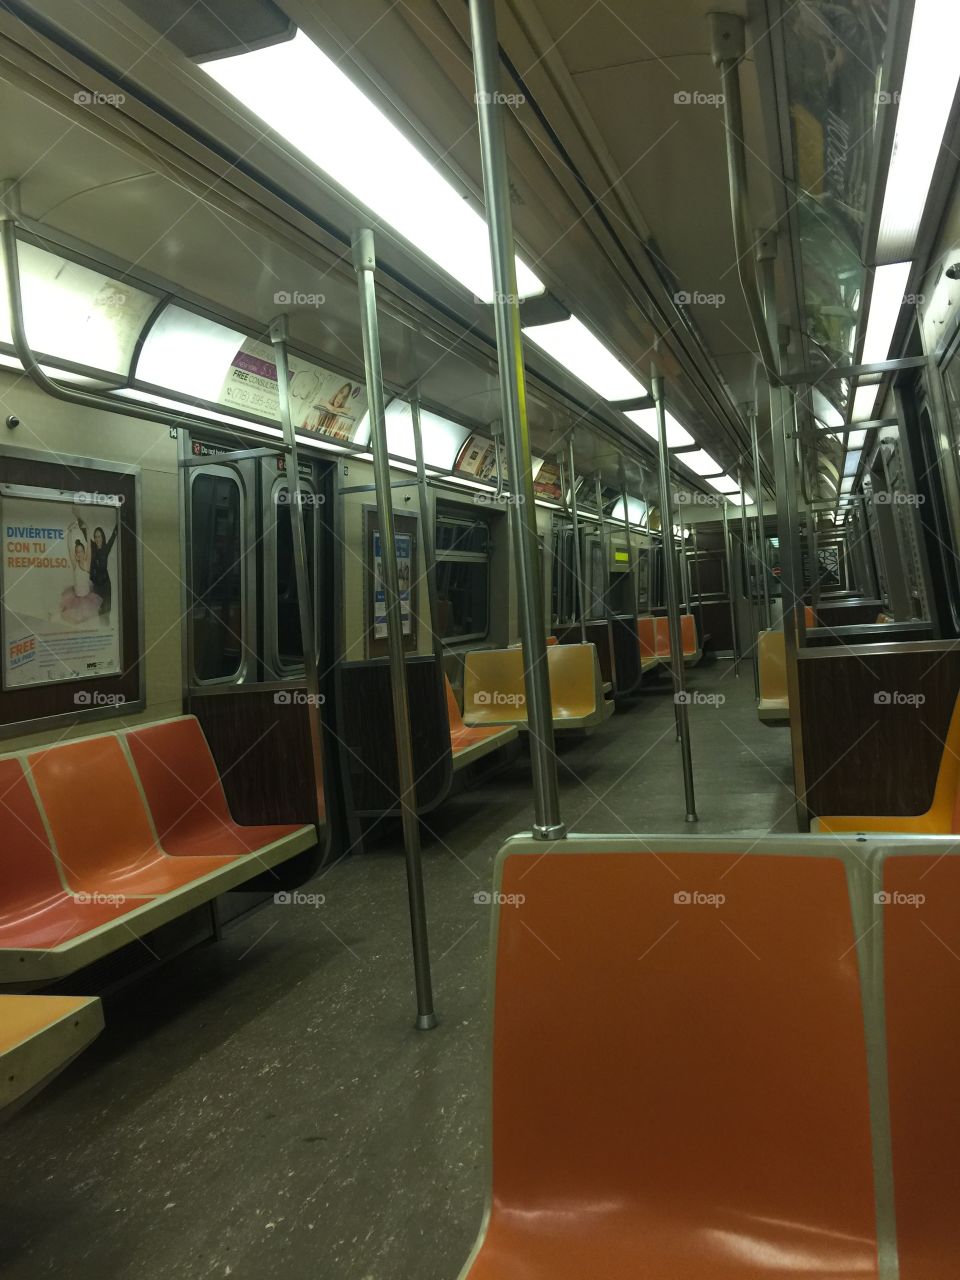 New York subway packed 